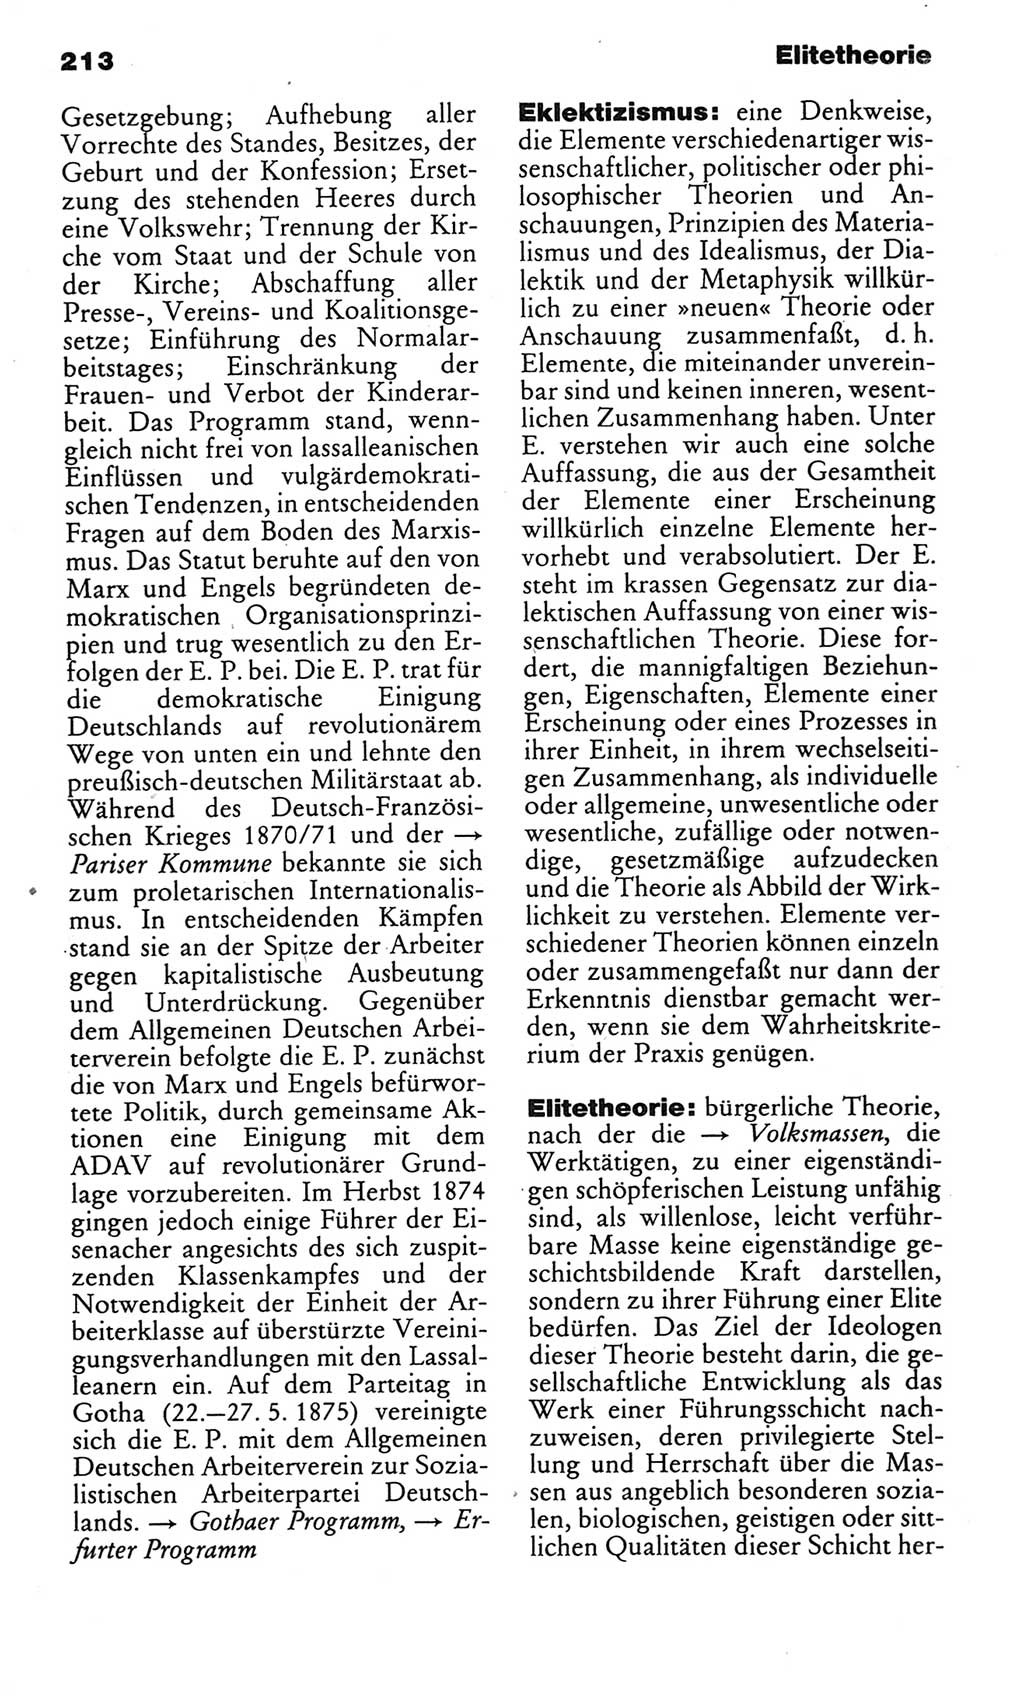 Kleines politisches Wörterbuch [Deutsche Demokratische Republik (DDR)] 1985, Seite 213 (Kl. pol. Wb. DDR 1985, S. 213)